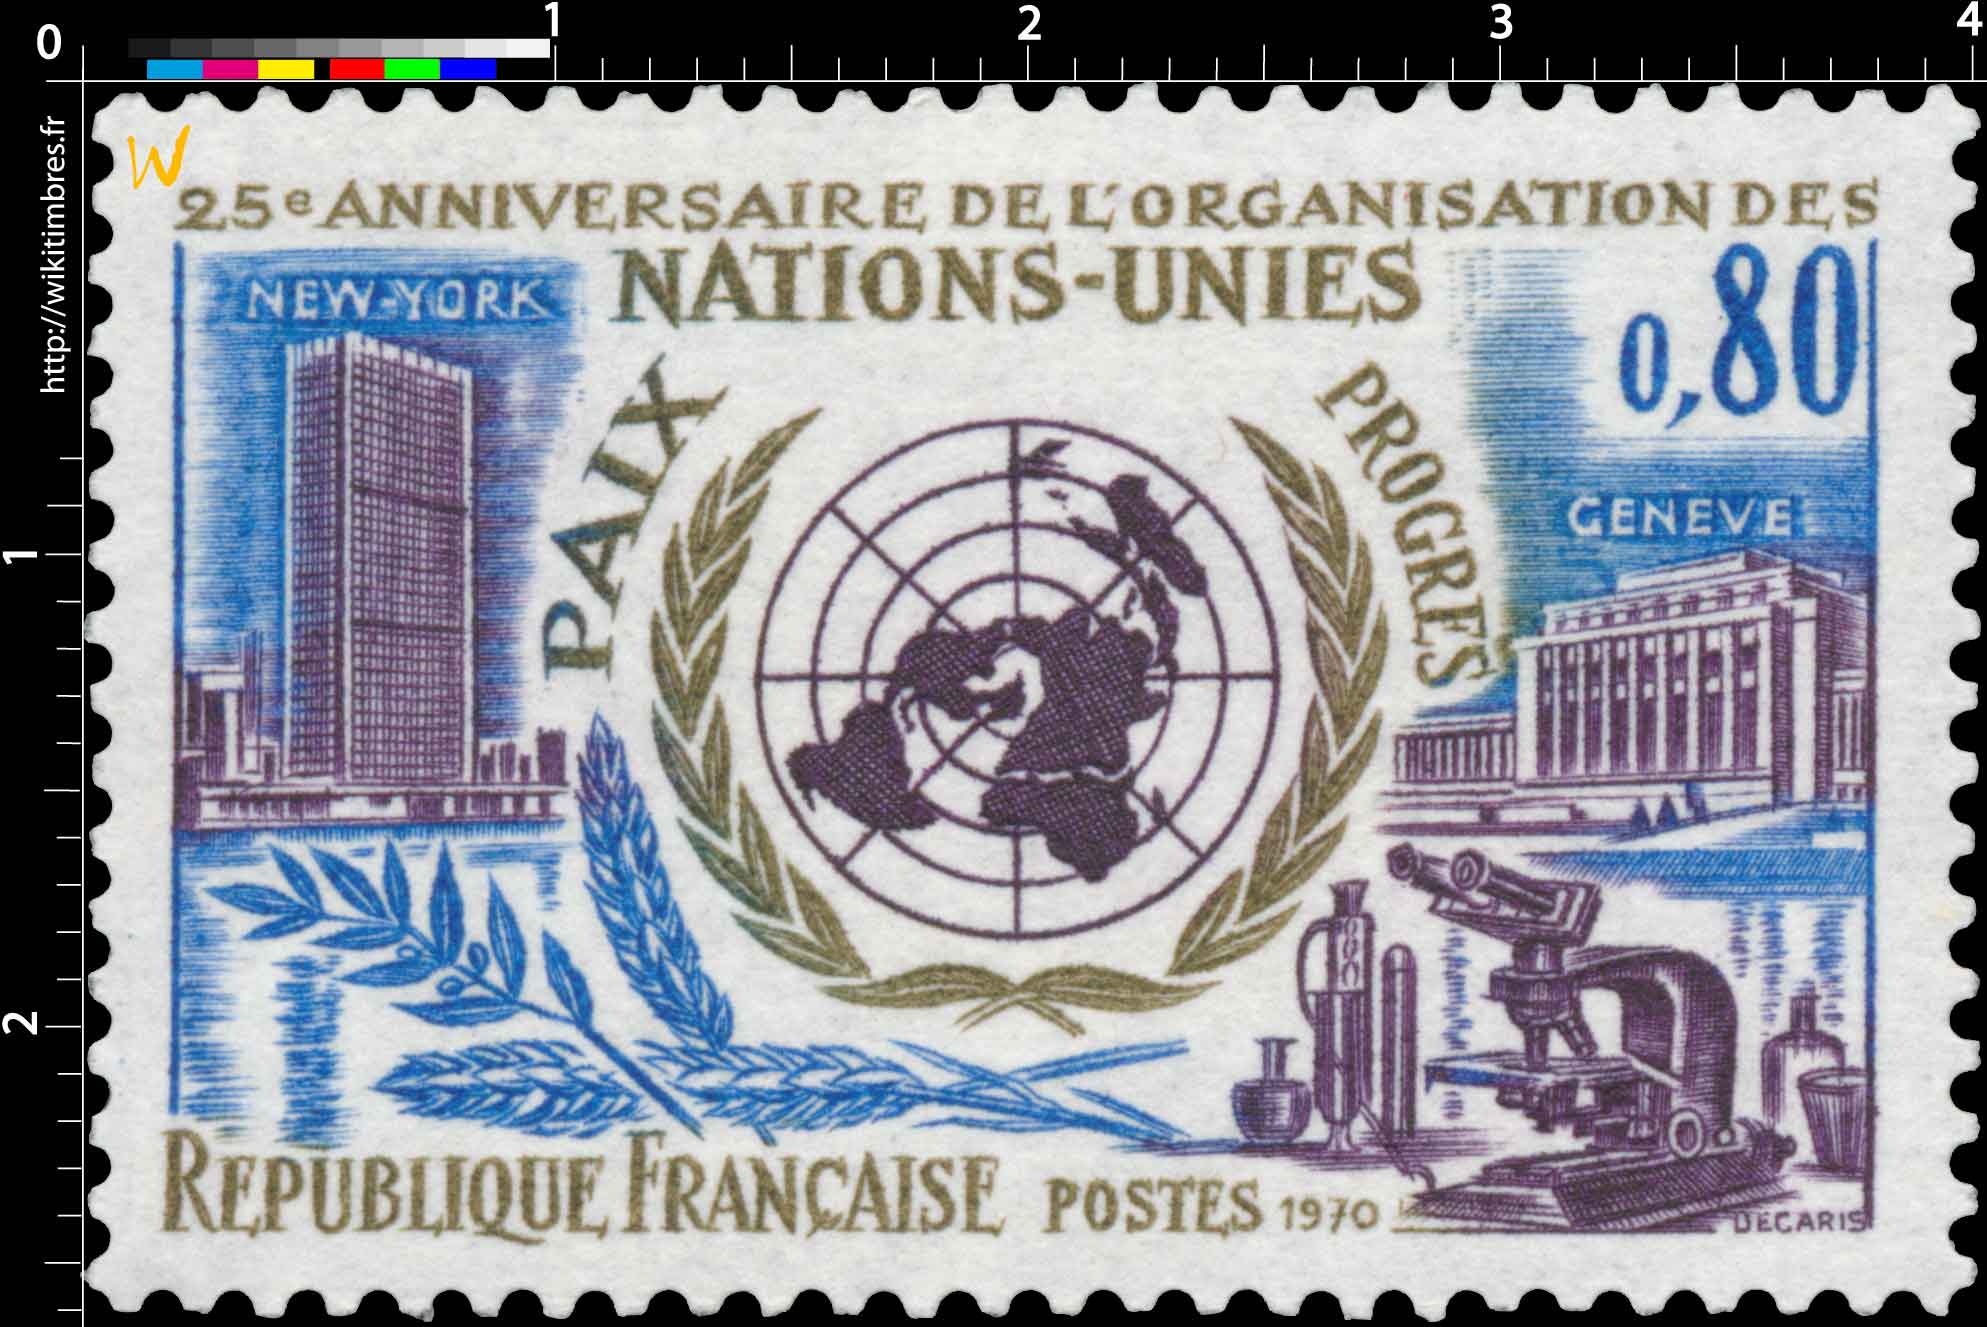 1970 25e ANNIVERSAIRE DE L'ORGANISATION DES NATIONS-UNIES PAIX PROGRÈS NEW-YORK GENÈVE